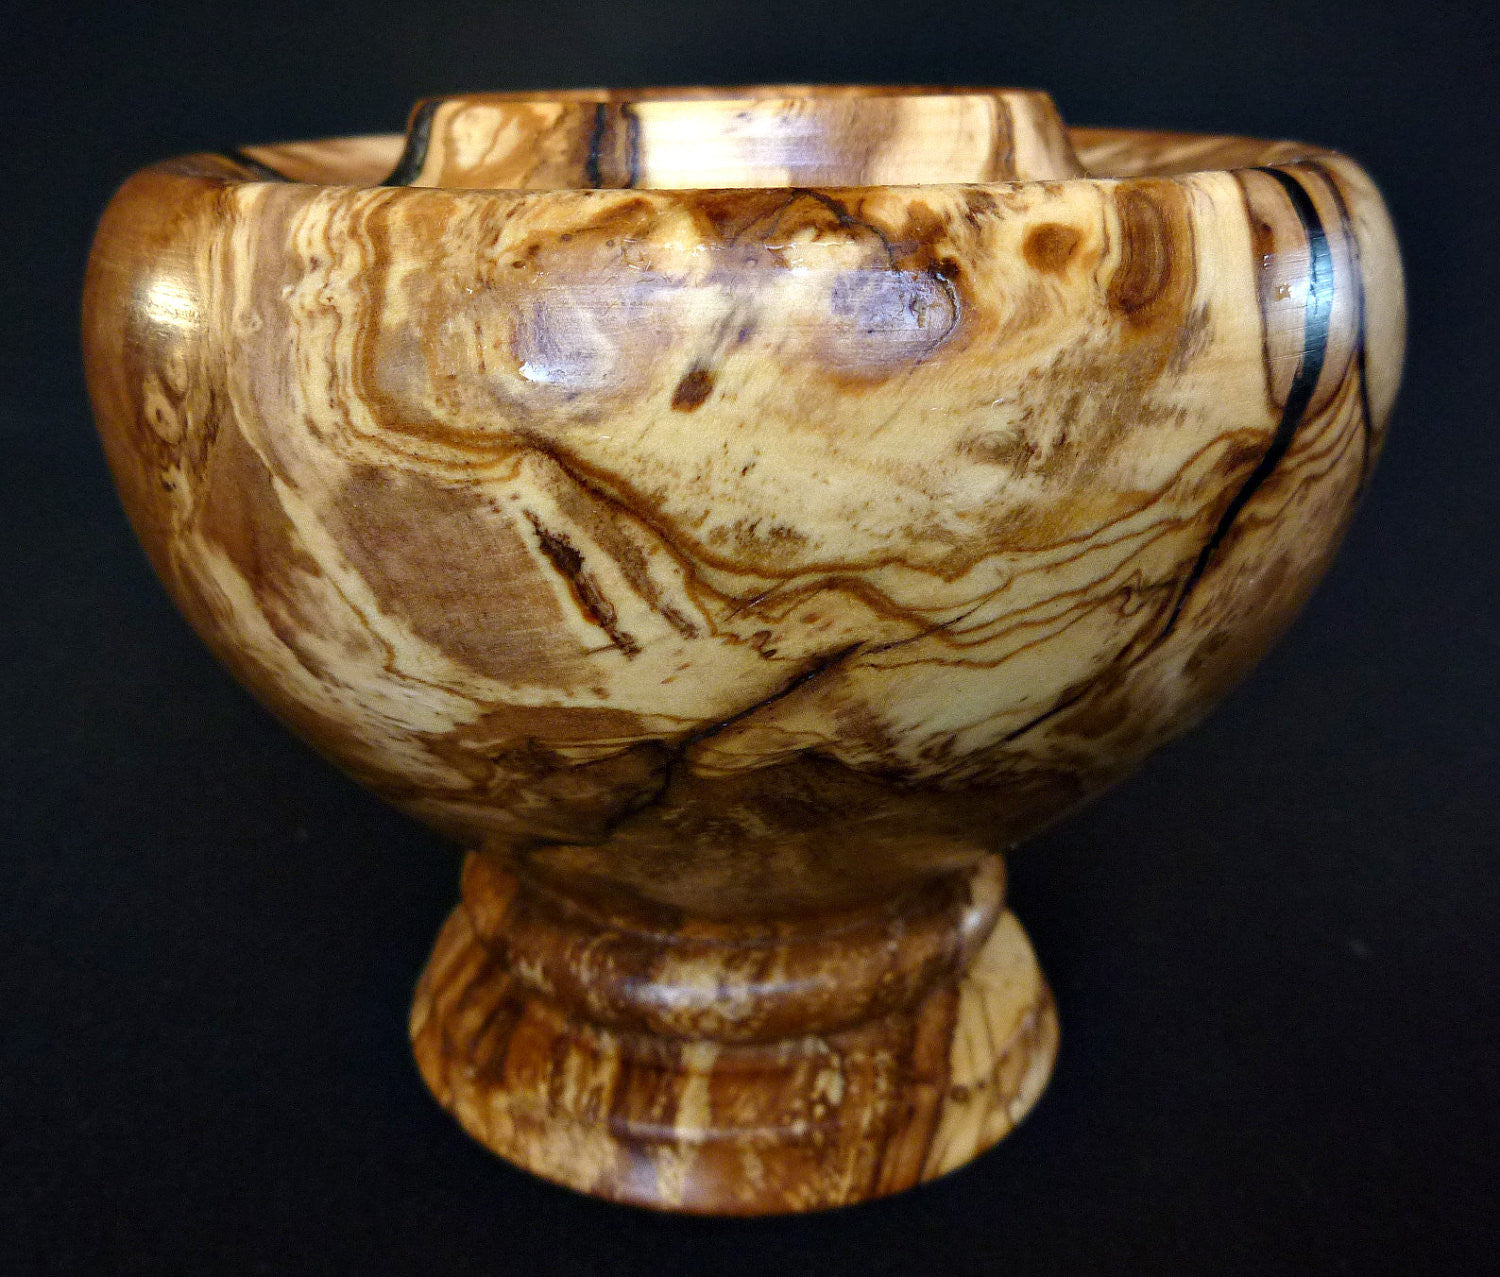 LV-330  Olive Burl Wood Turned Pedestal Vessel, Footed Vase, Wood Bowl